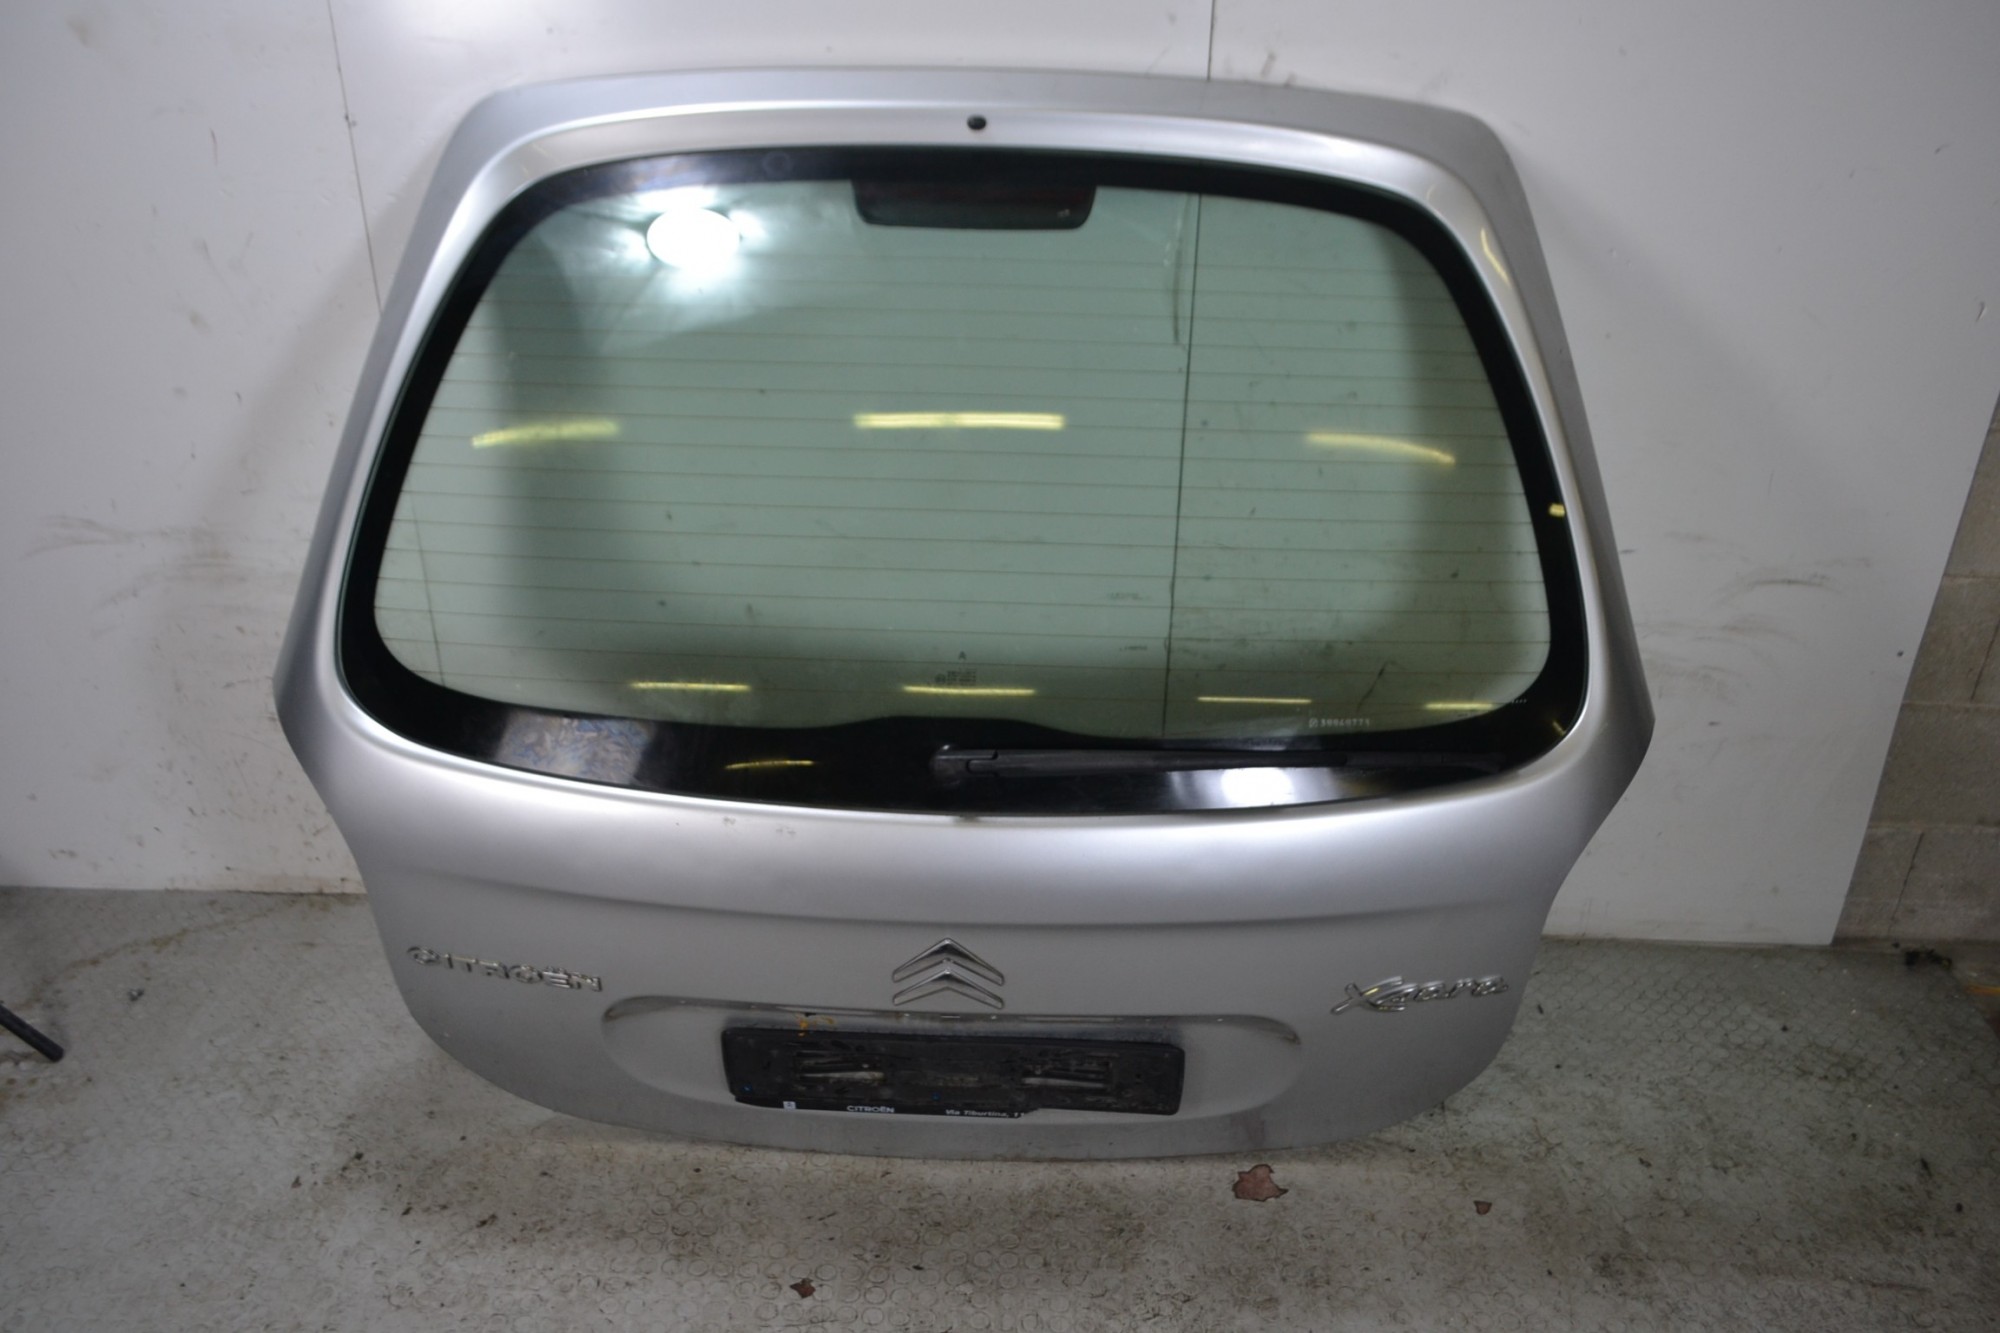 Portellone bagagliaio posteriore Citroen Xsara Picasso 1999 al 2012  1669372755285